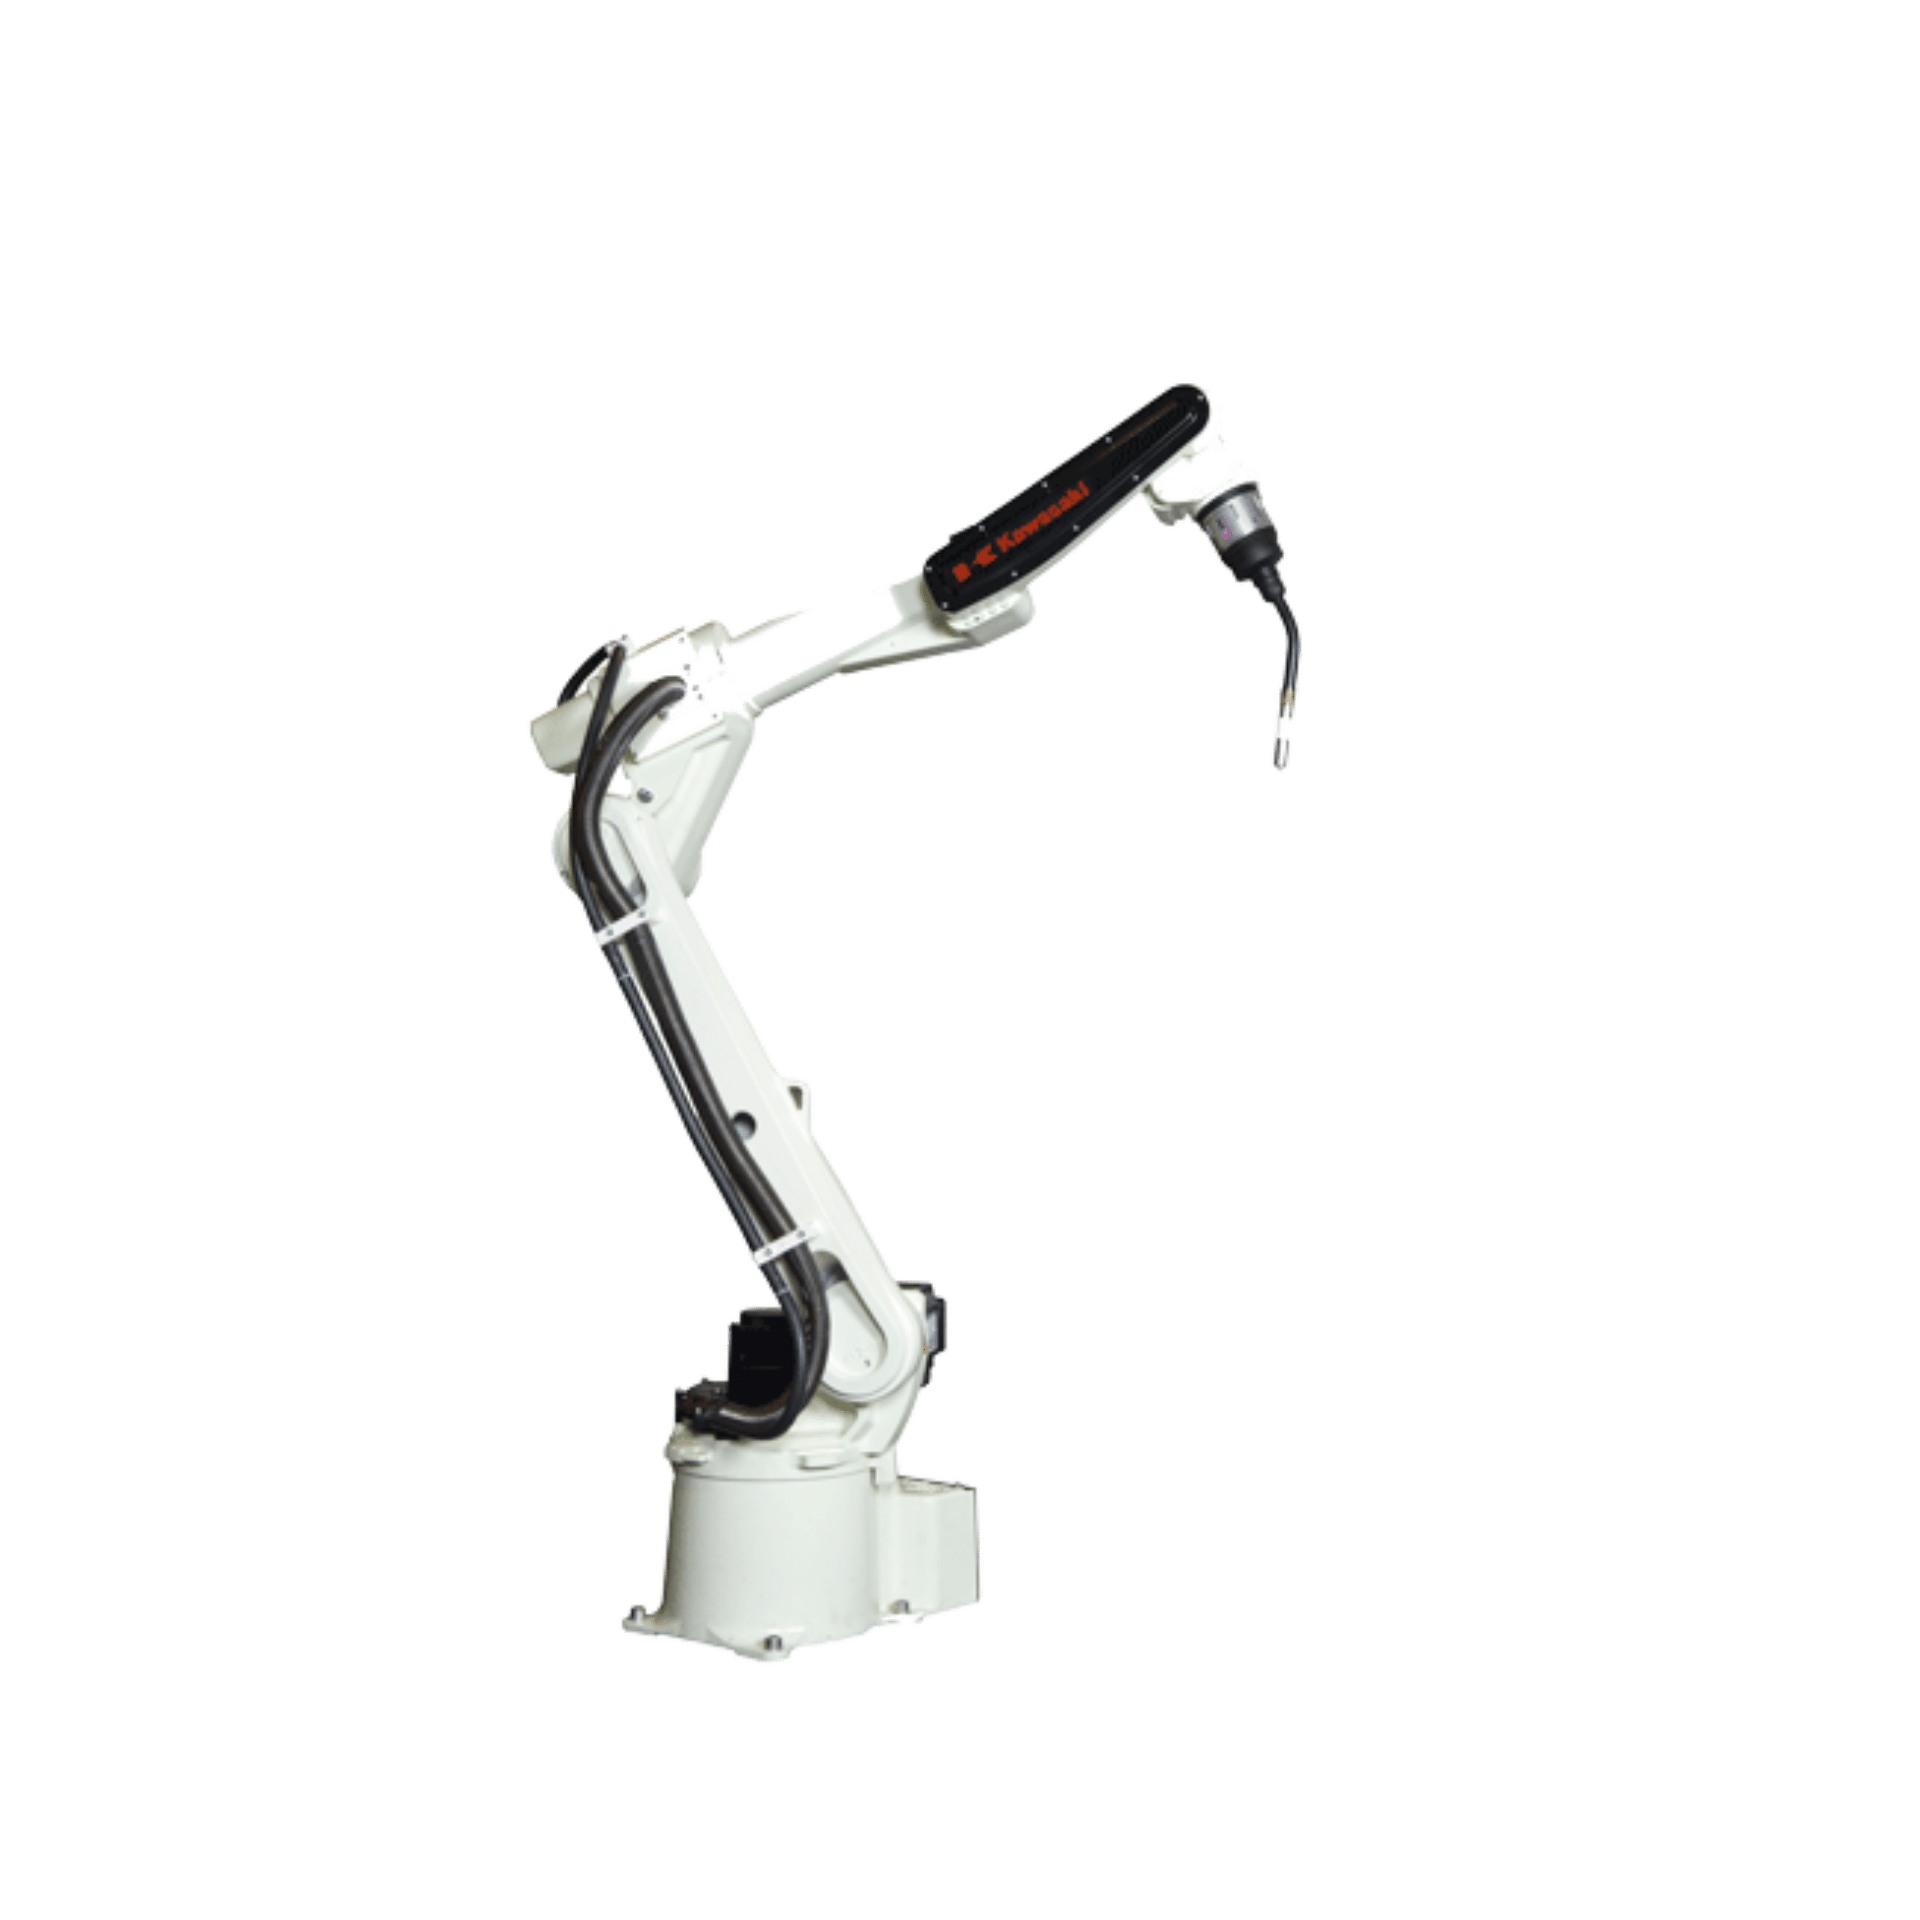 Kawasaki robot arm